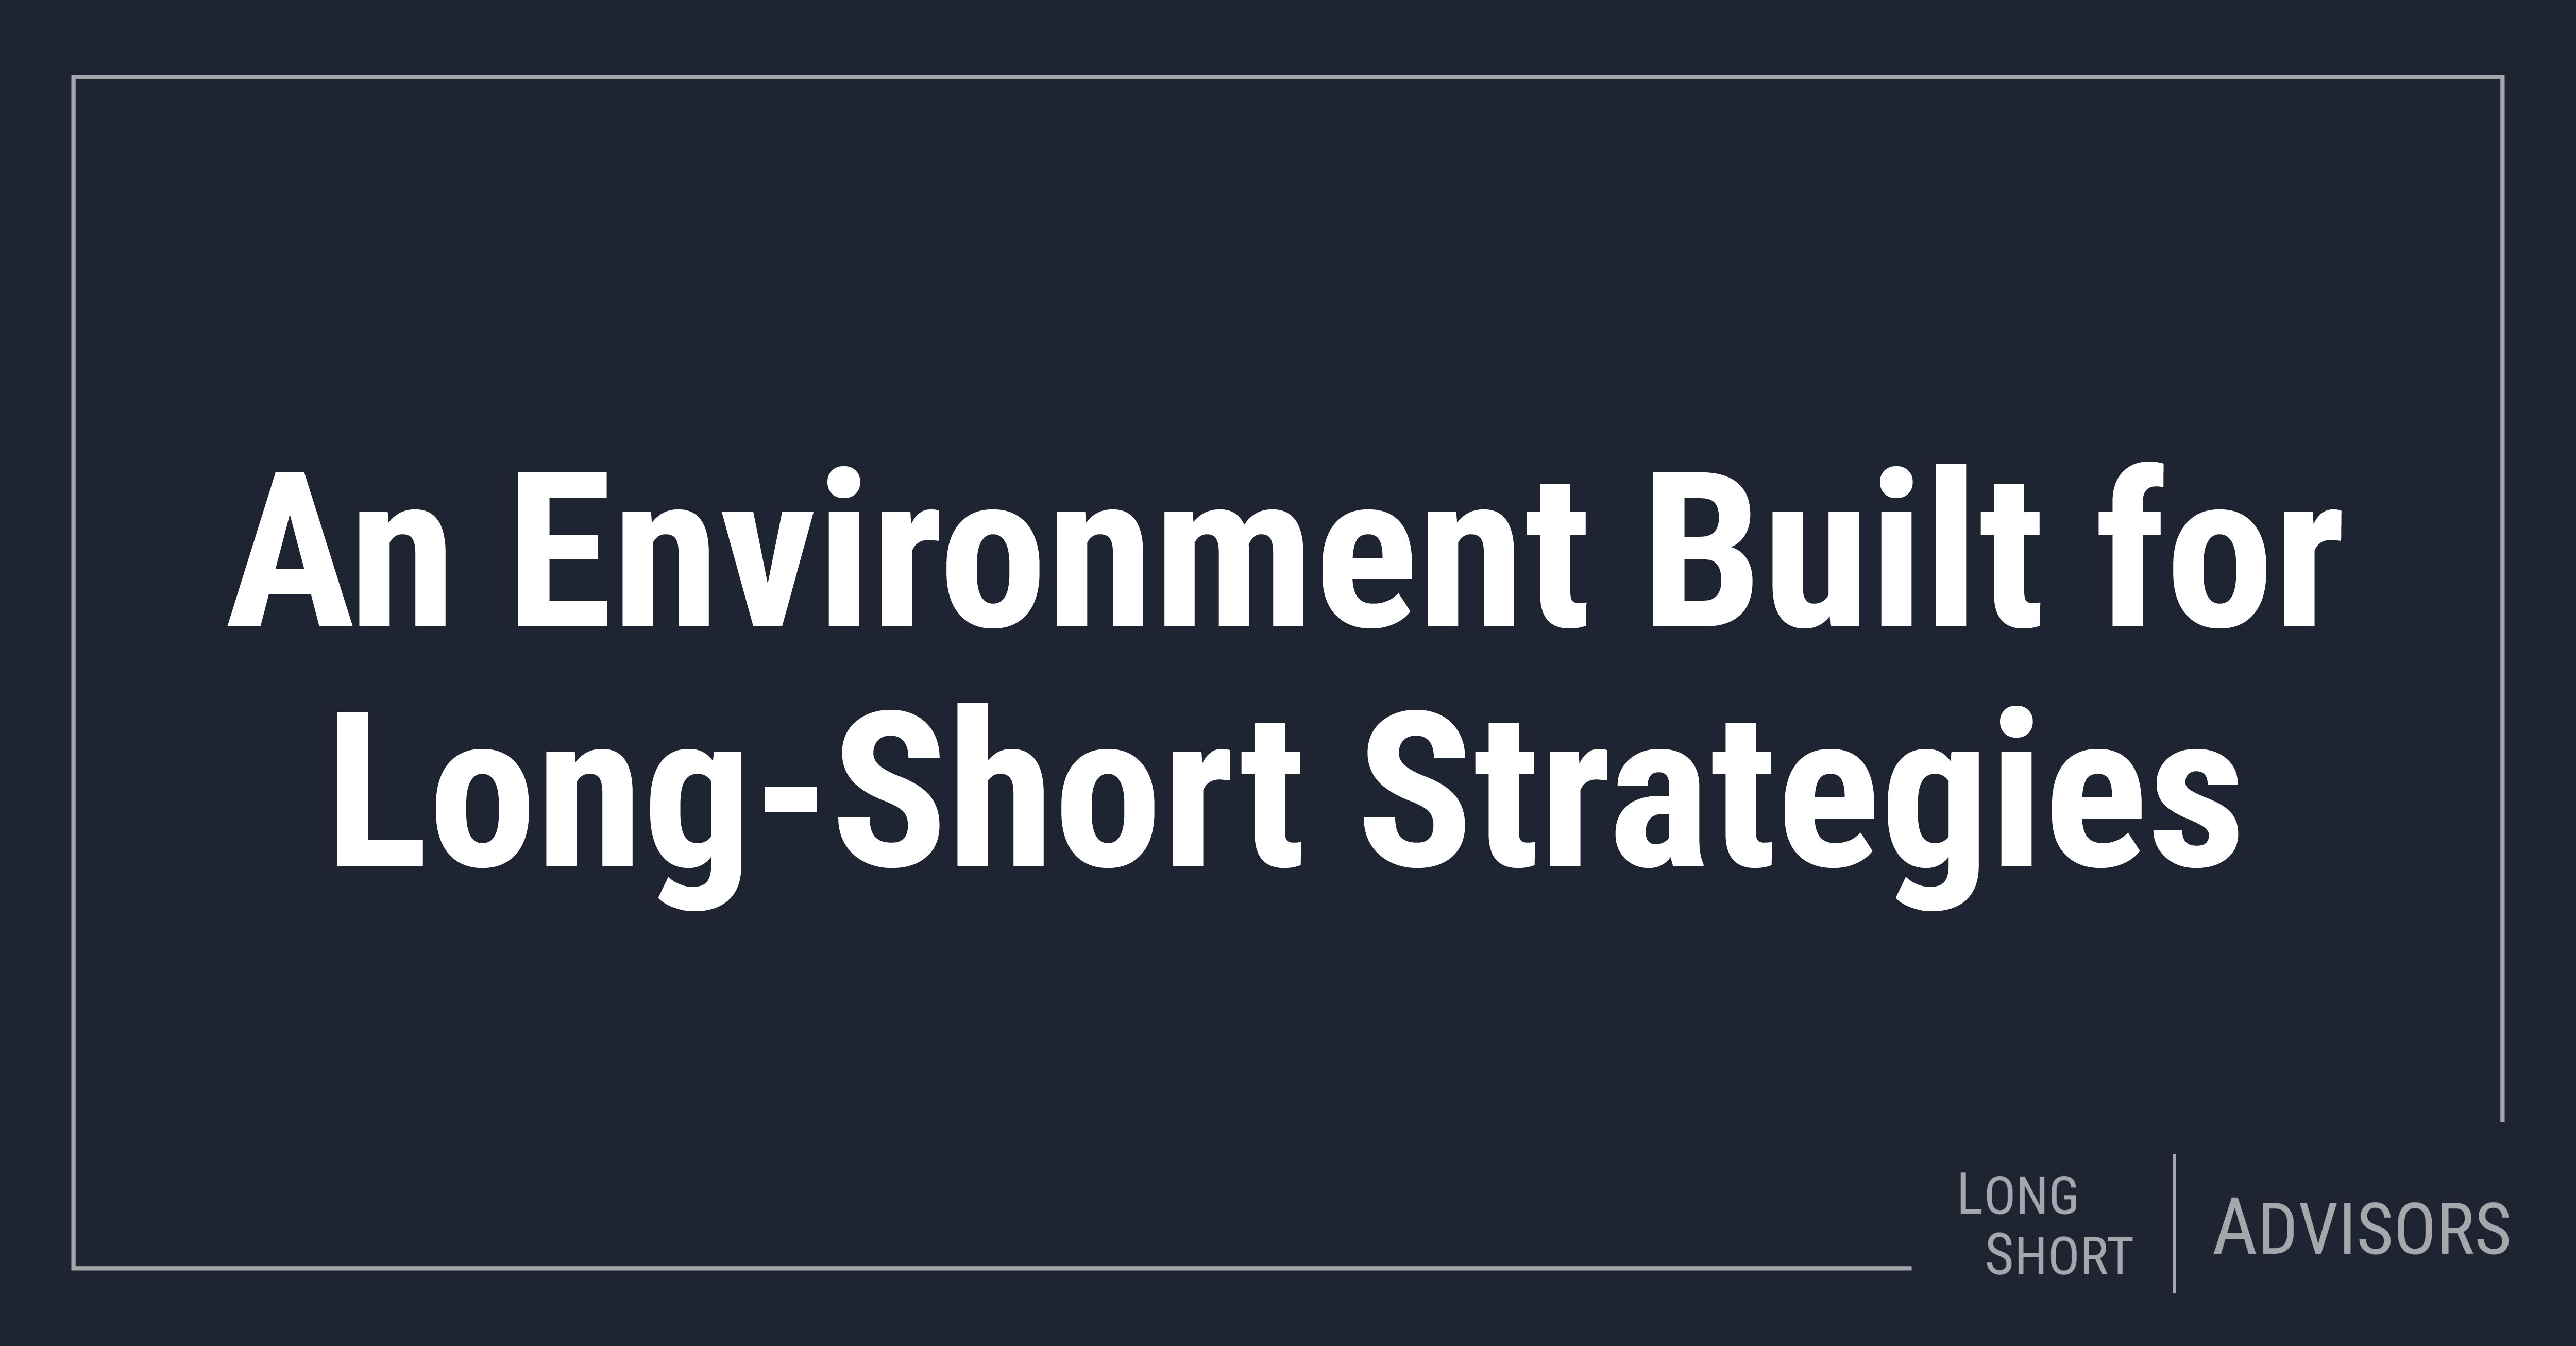 An Environment Built for Long-Short Strategies